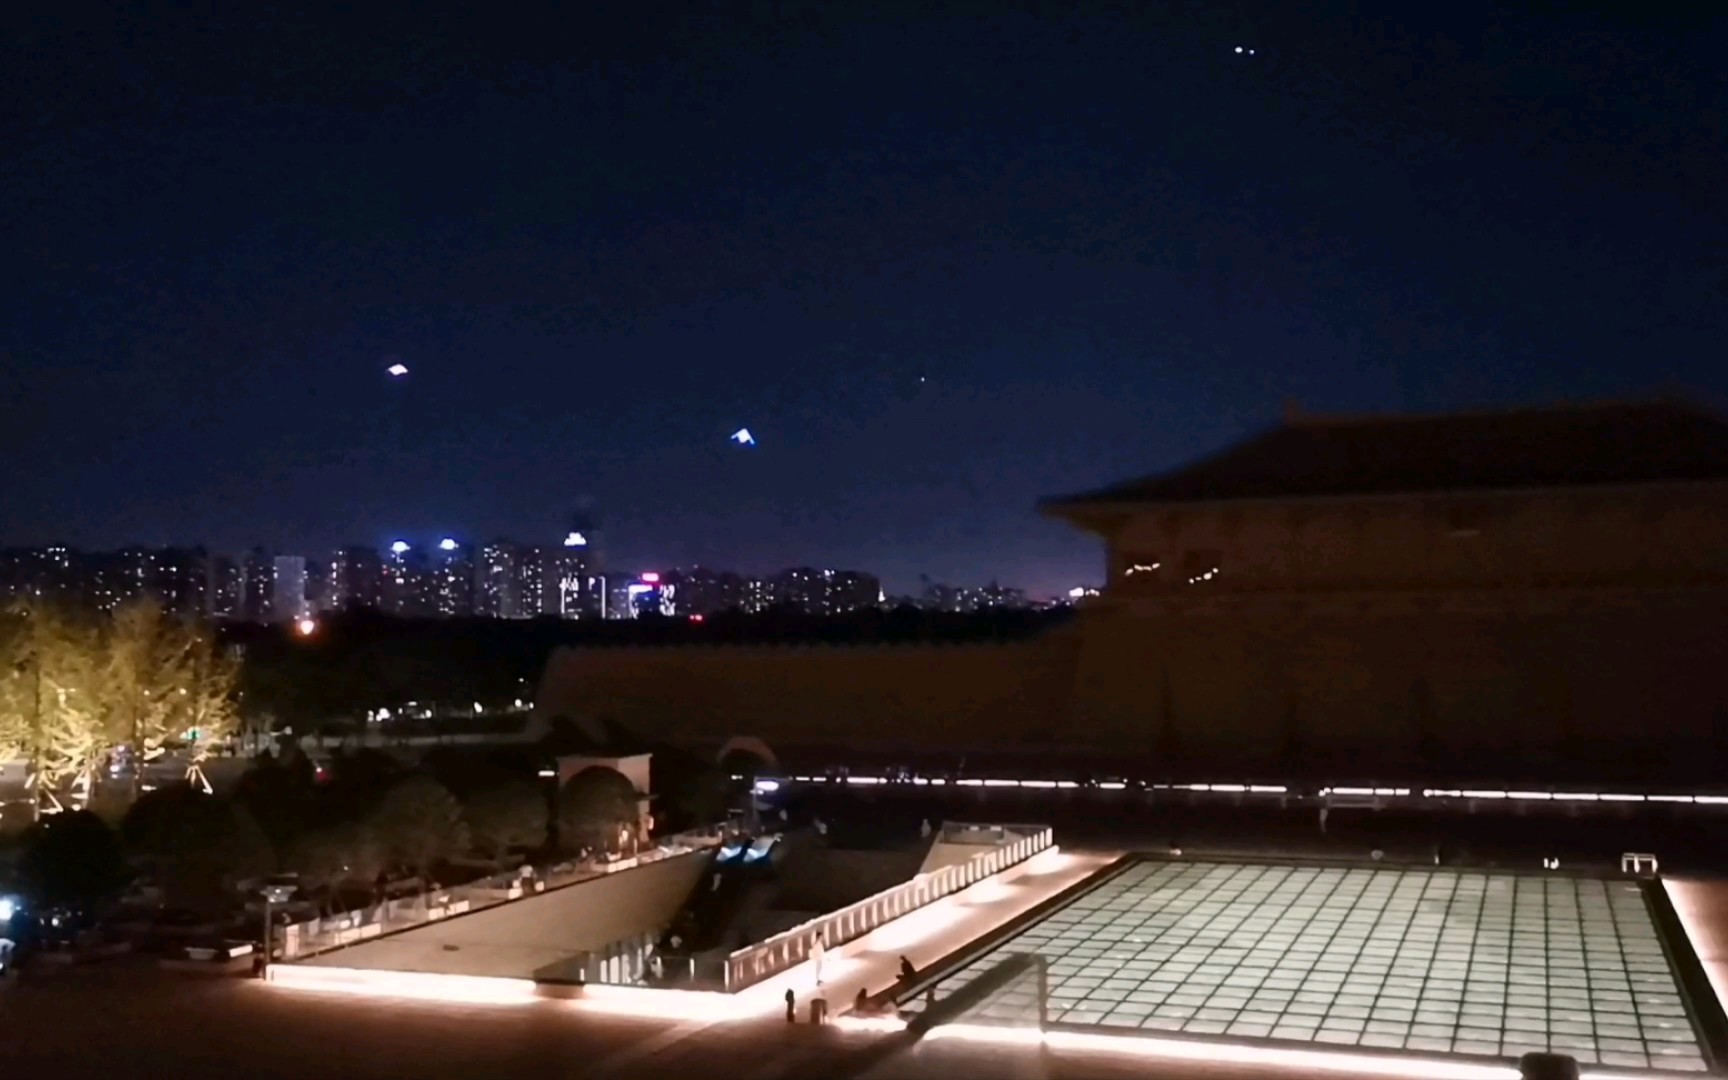 西安丹凤门广场 晚上有很多人放风筝 21:54 23715